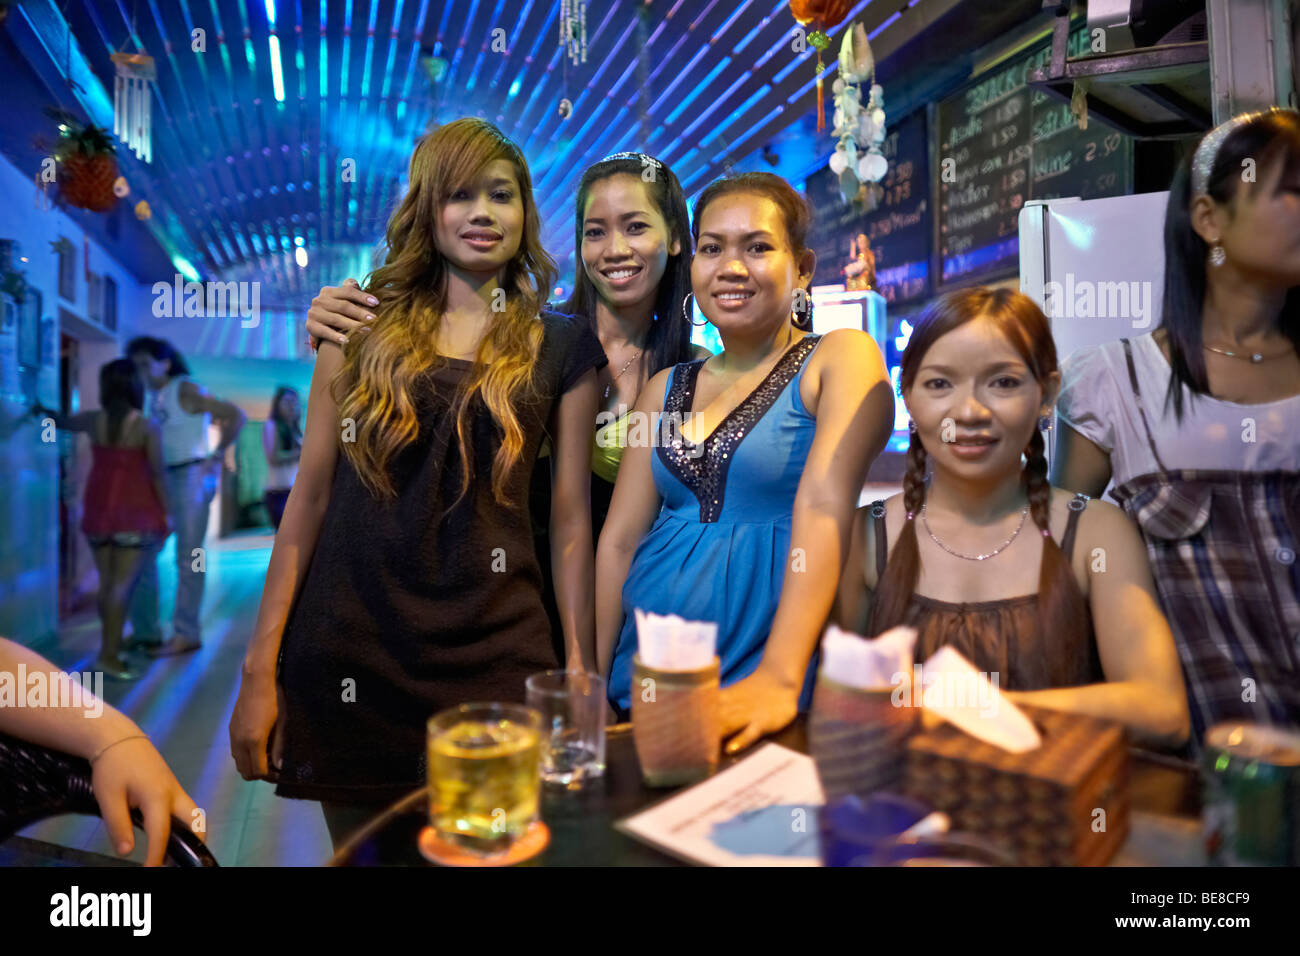 Un bar à bière cambodgienne et commerce du sexe les filles qui travaillent. Phnom Penh Cambodge S. E. Asie Banque D'Images